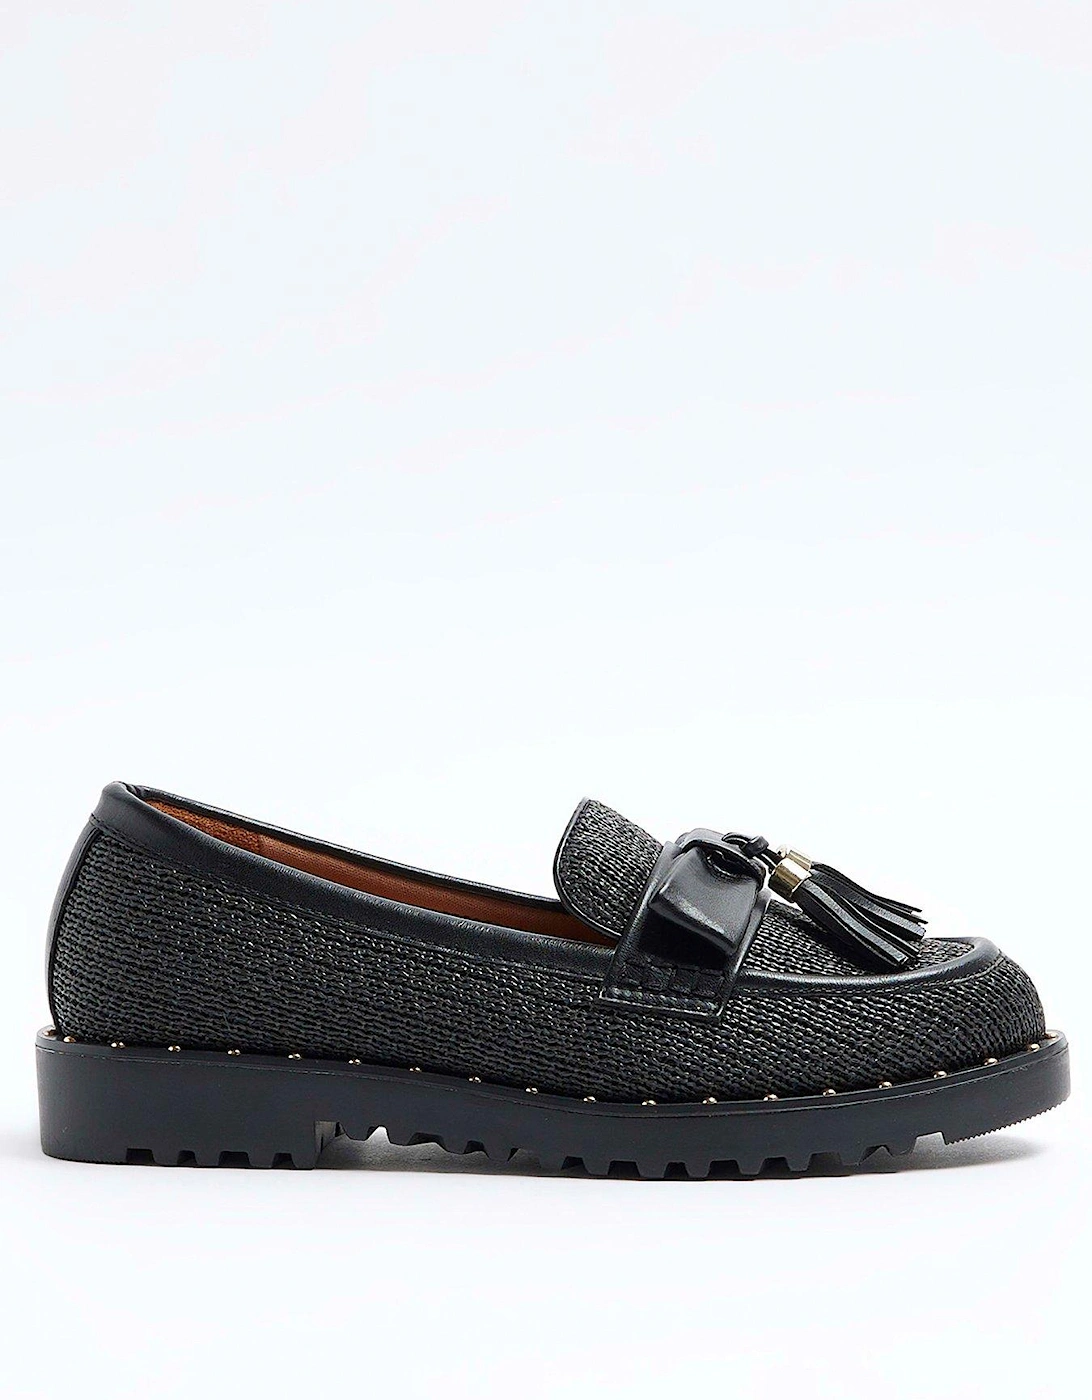 Raffia Loafer Shoe - Black, 5 of 4